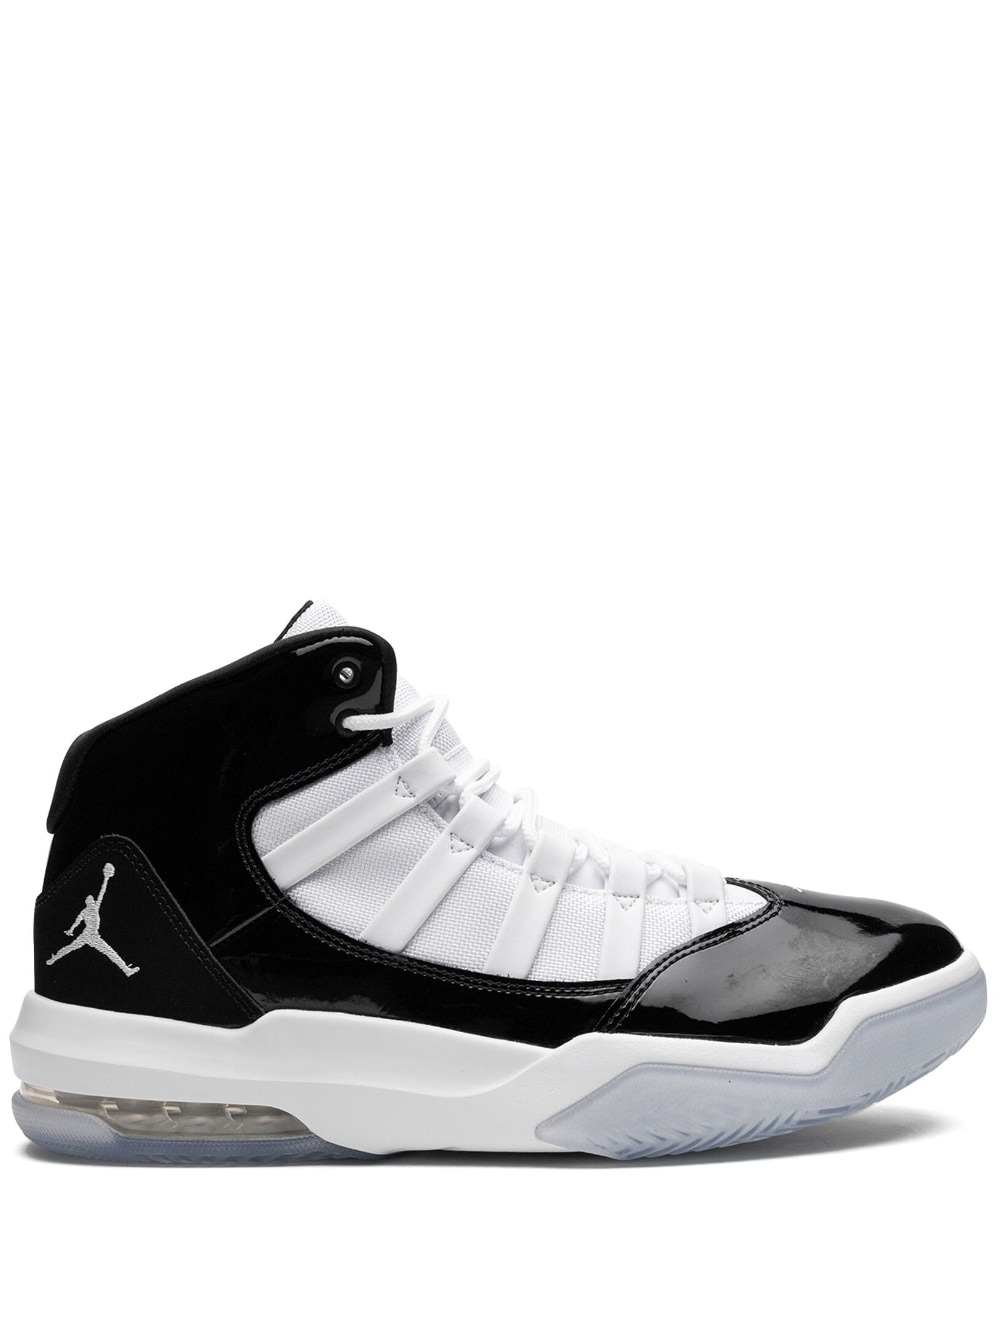 Jordan Jordan Max Aura sneakers - Black